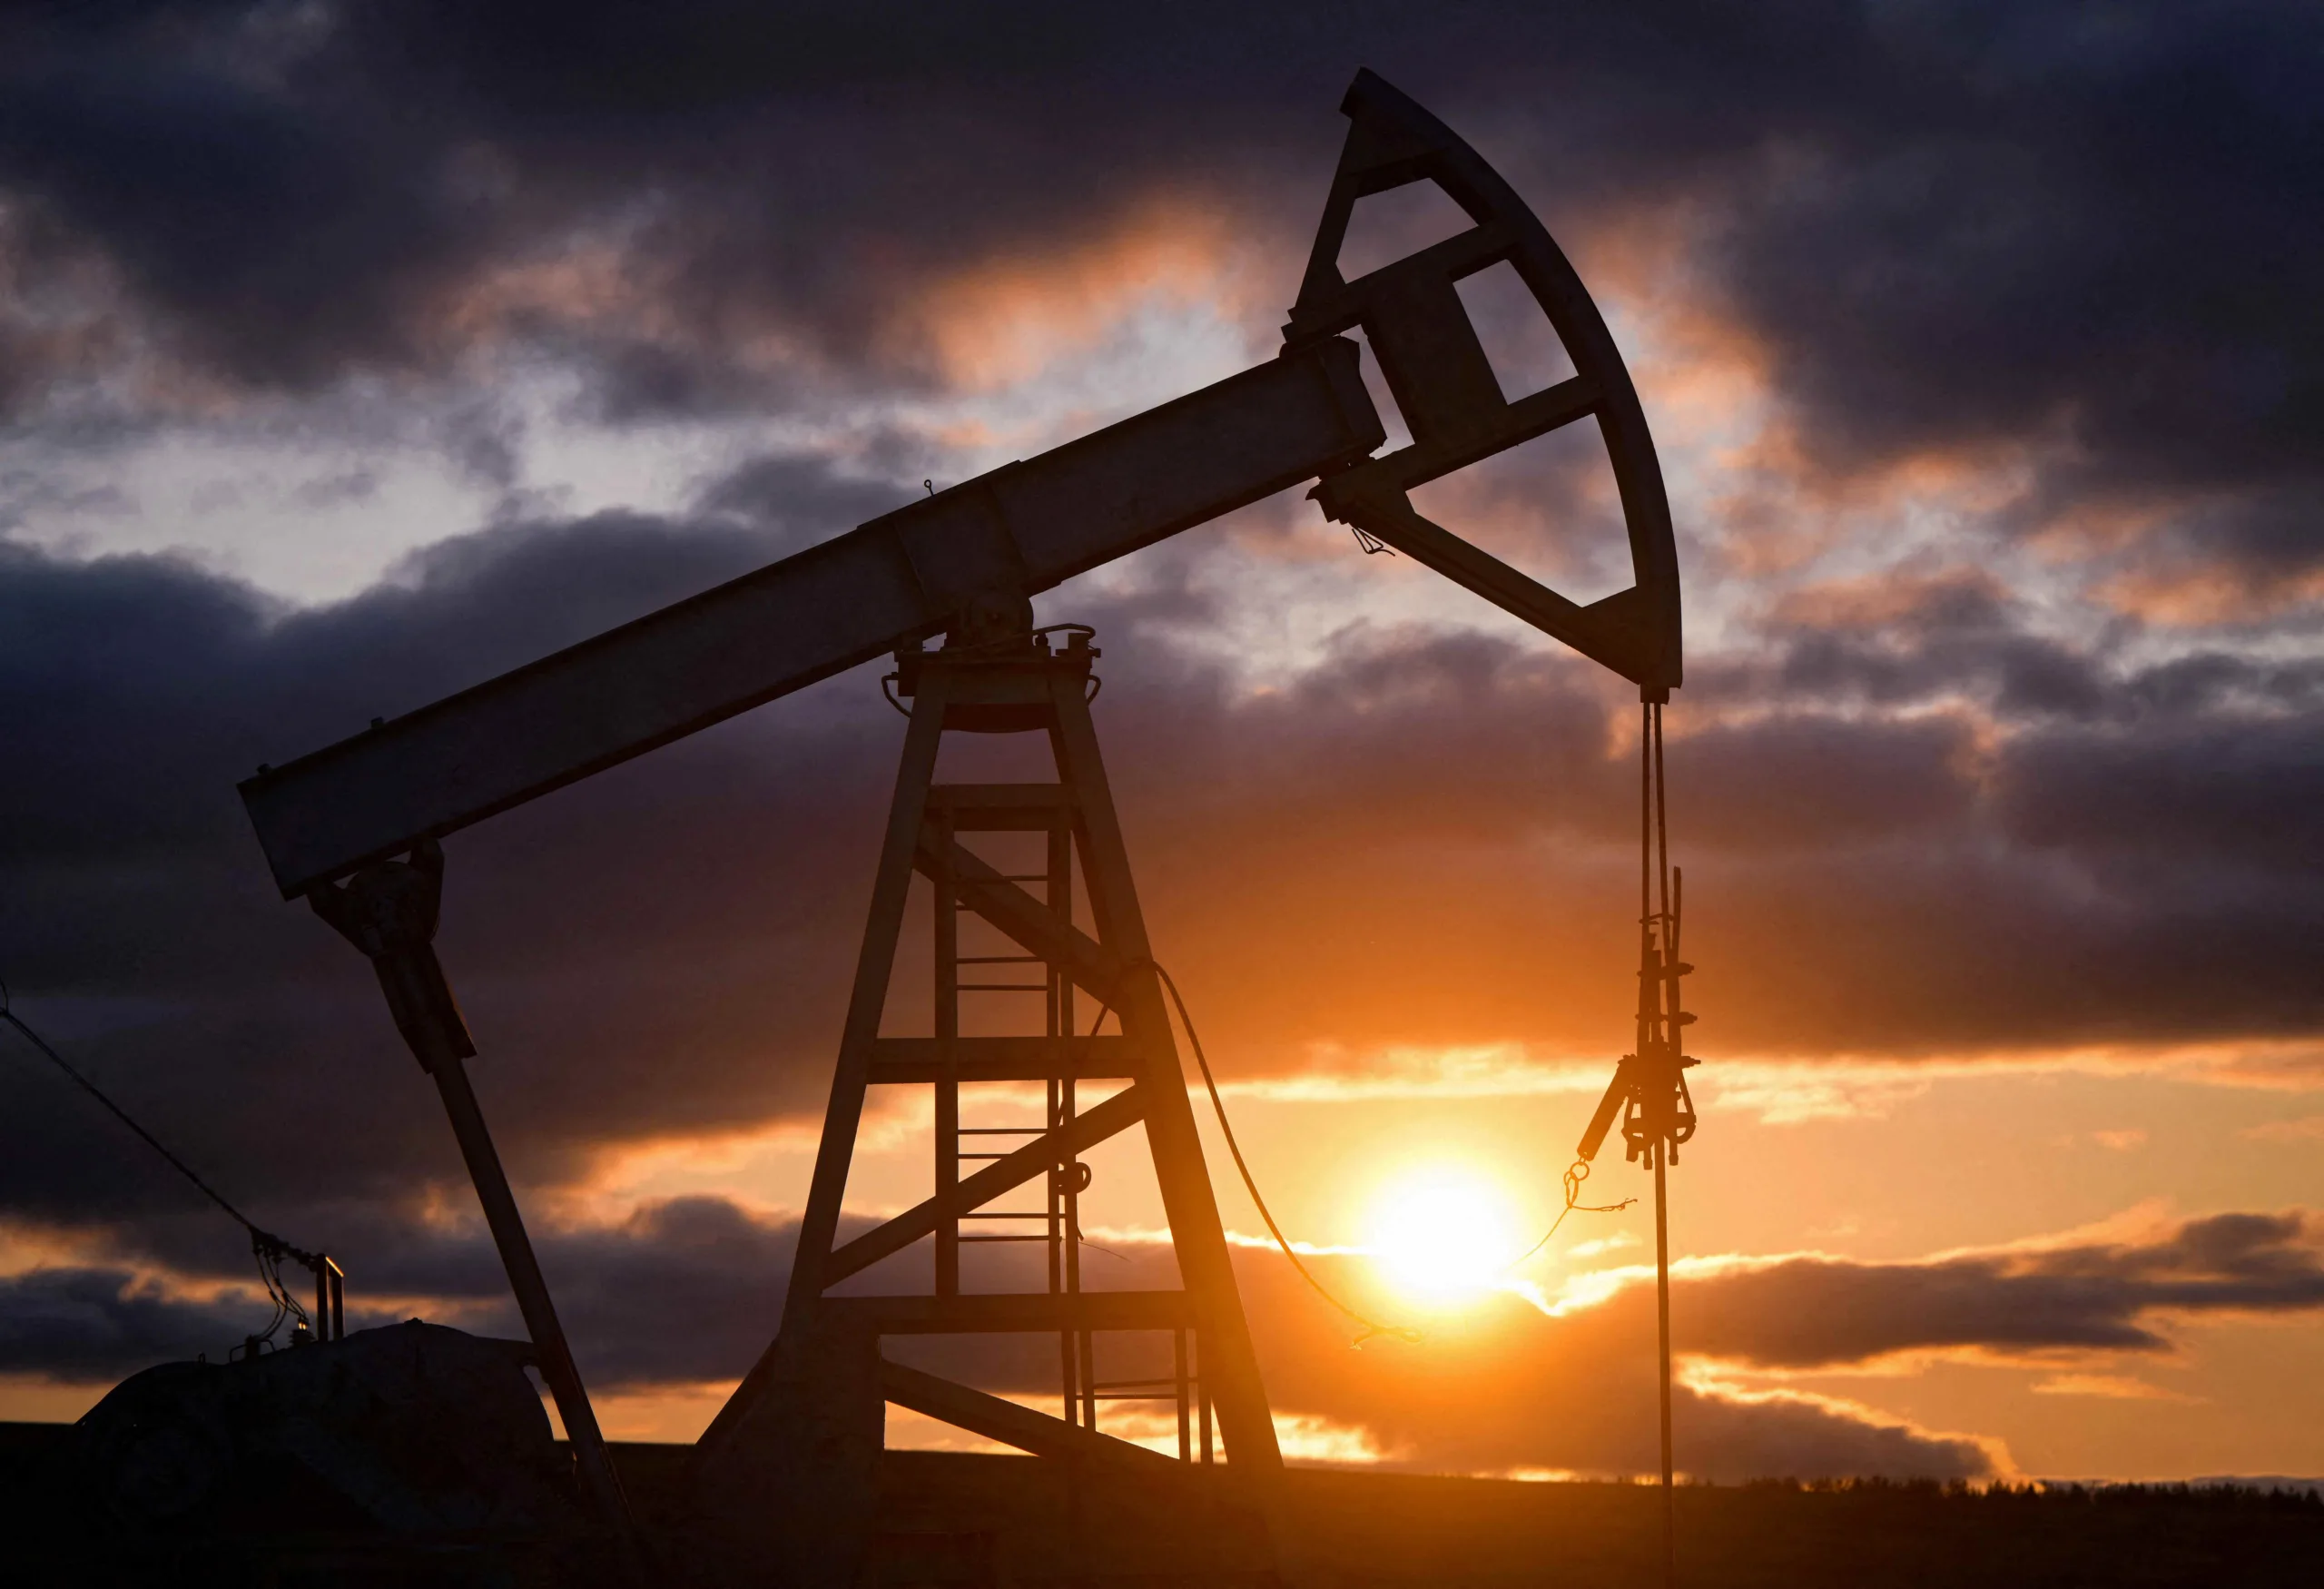 Mercado de petróleo volta atenções para Opep; como reunião deve afetar a commodity?